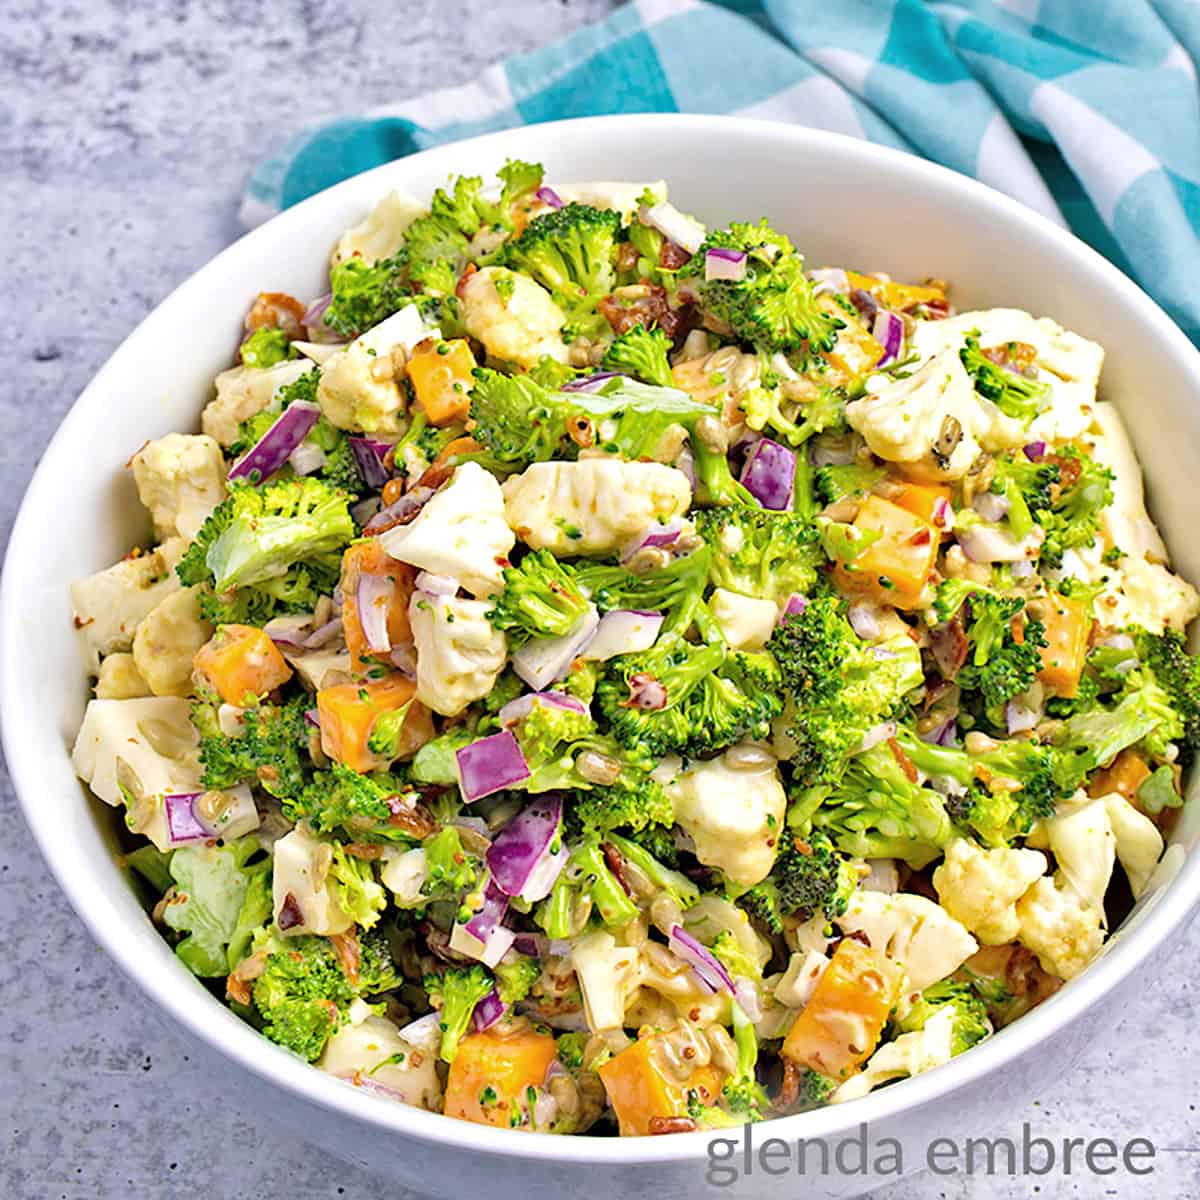 Easy Delicious Broccoli Cauliflower Salad Recipe - Glenda Embree